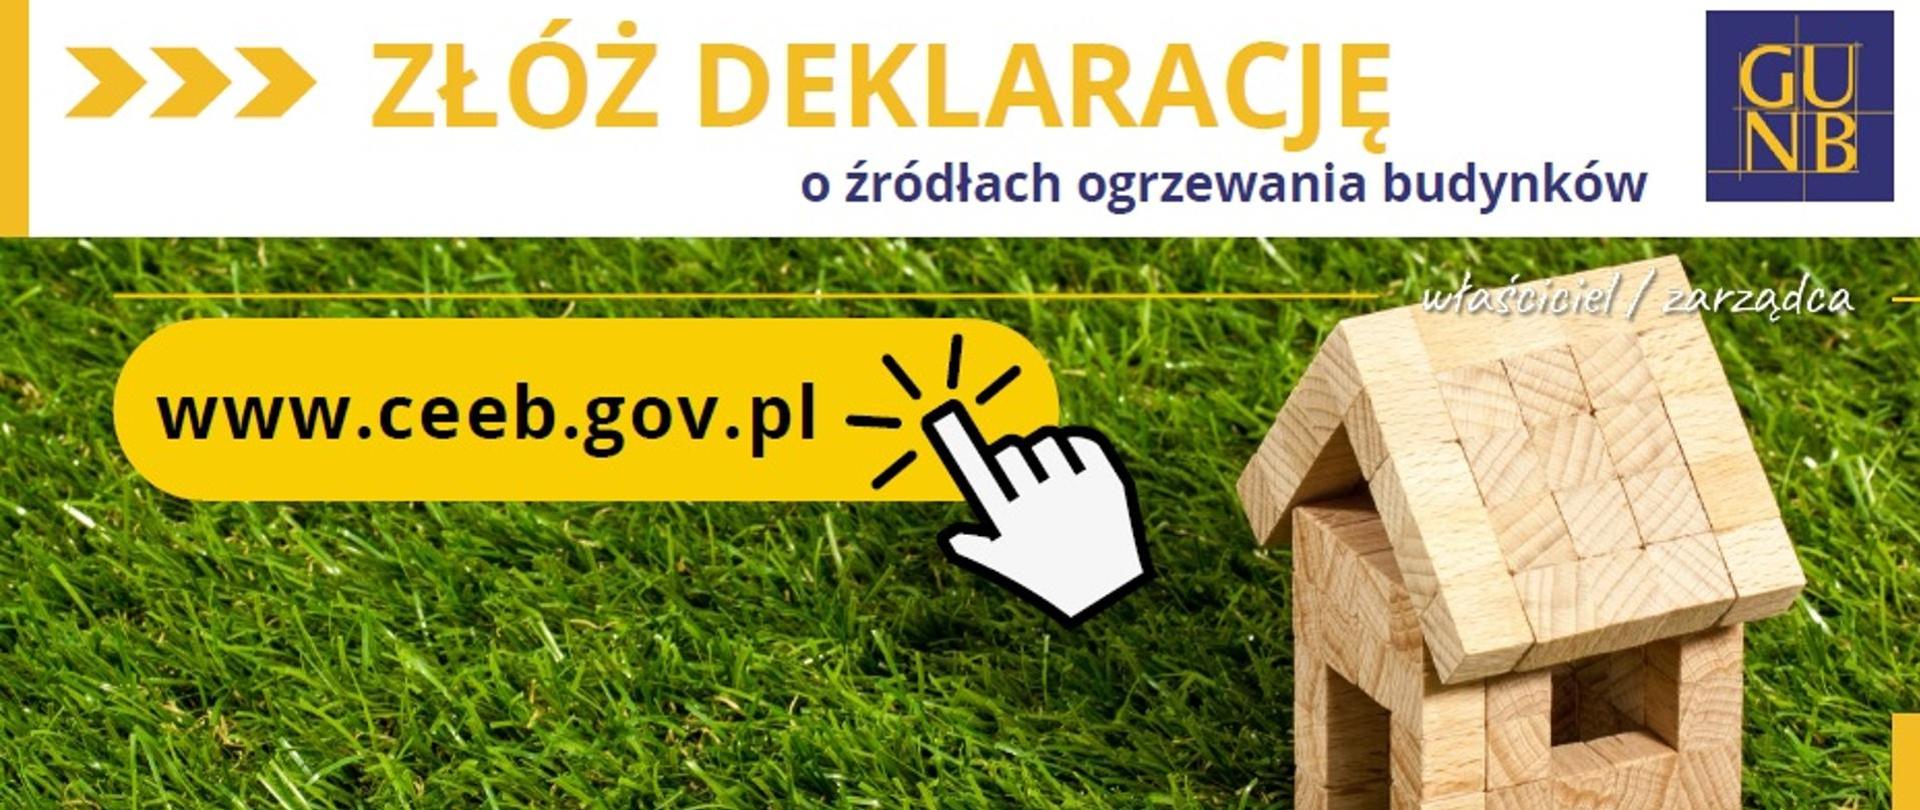 tekst: złóż deklarację o źródłach ogrzewania budynków www.ceeb.gov.pl, zdjęcie domku dla ptaków z drewna na trawie